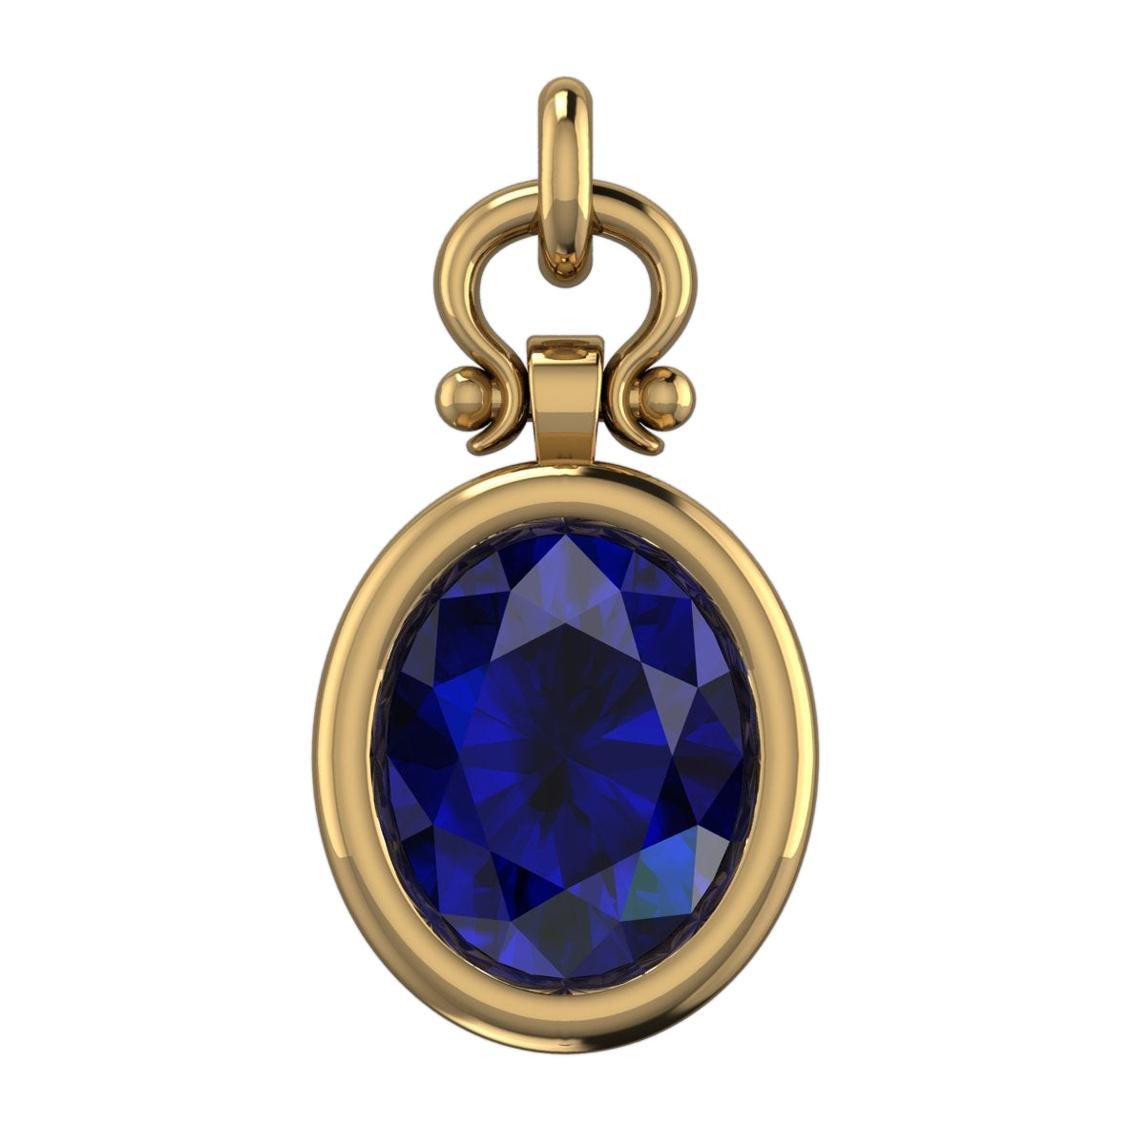 1.75 Carat Oval Cut Blue Sapphire Custom Pendant Necklace in 18k